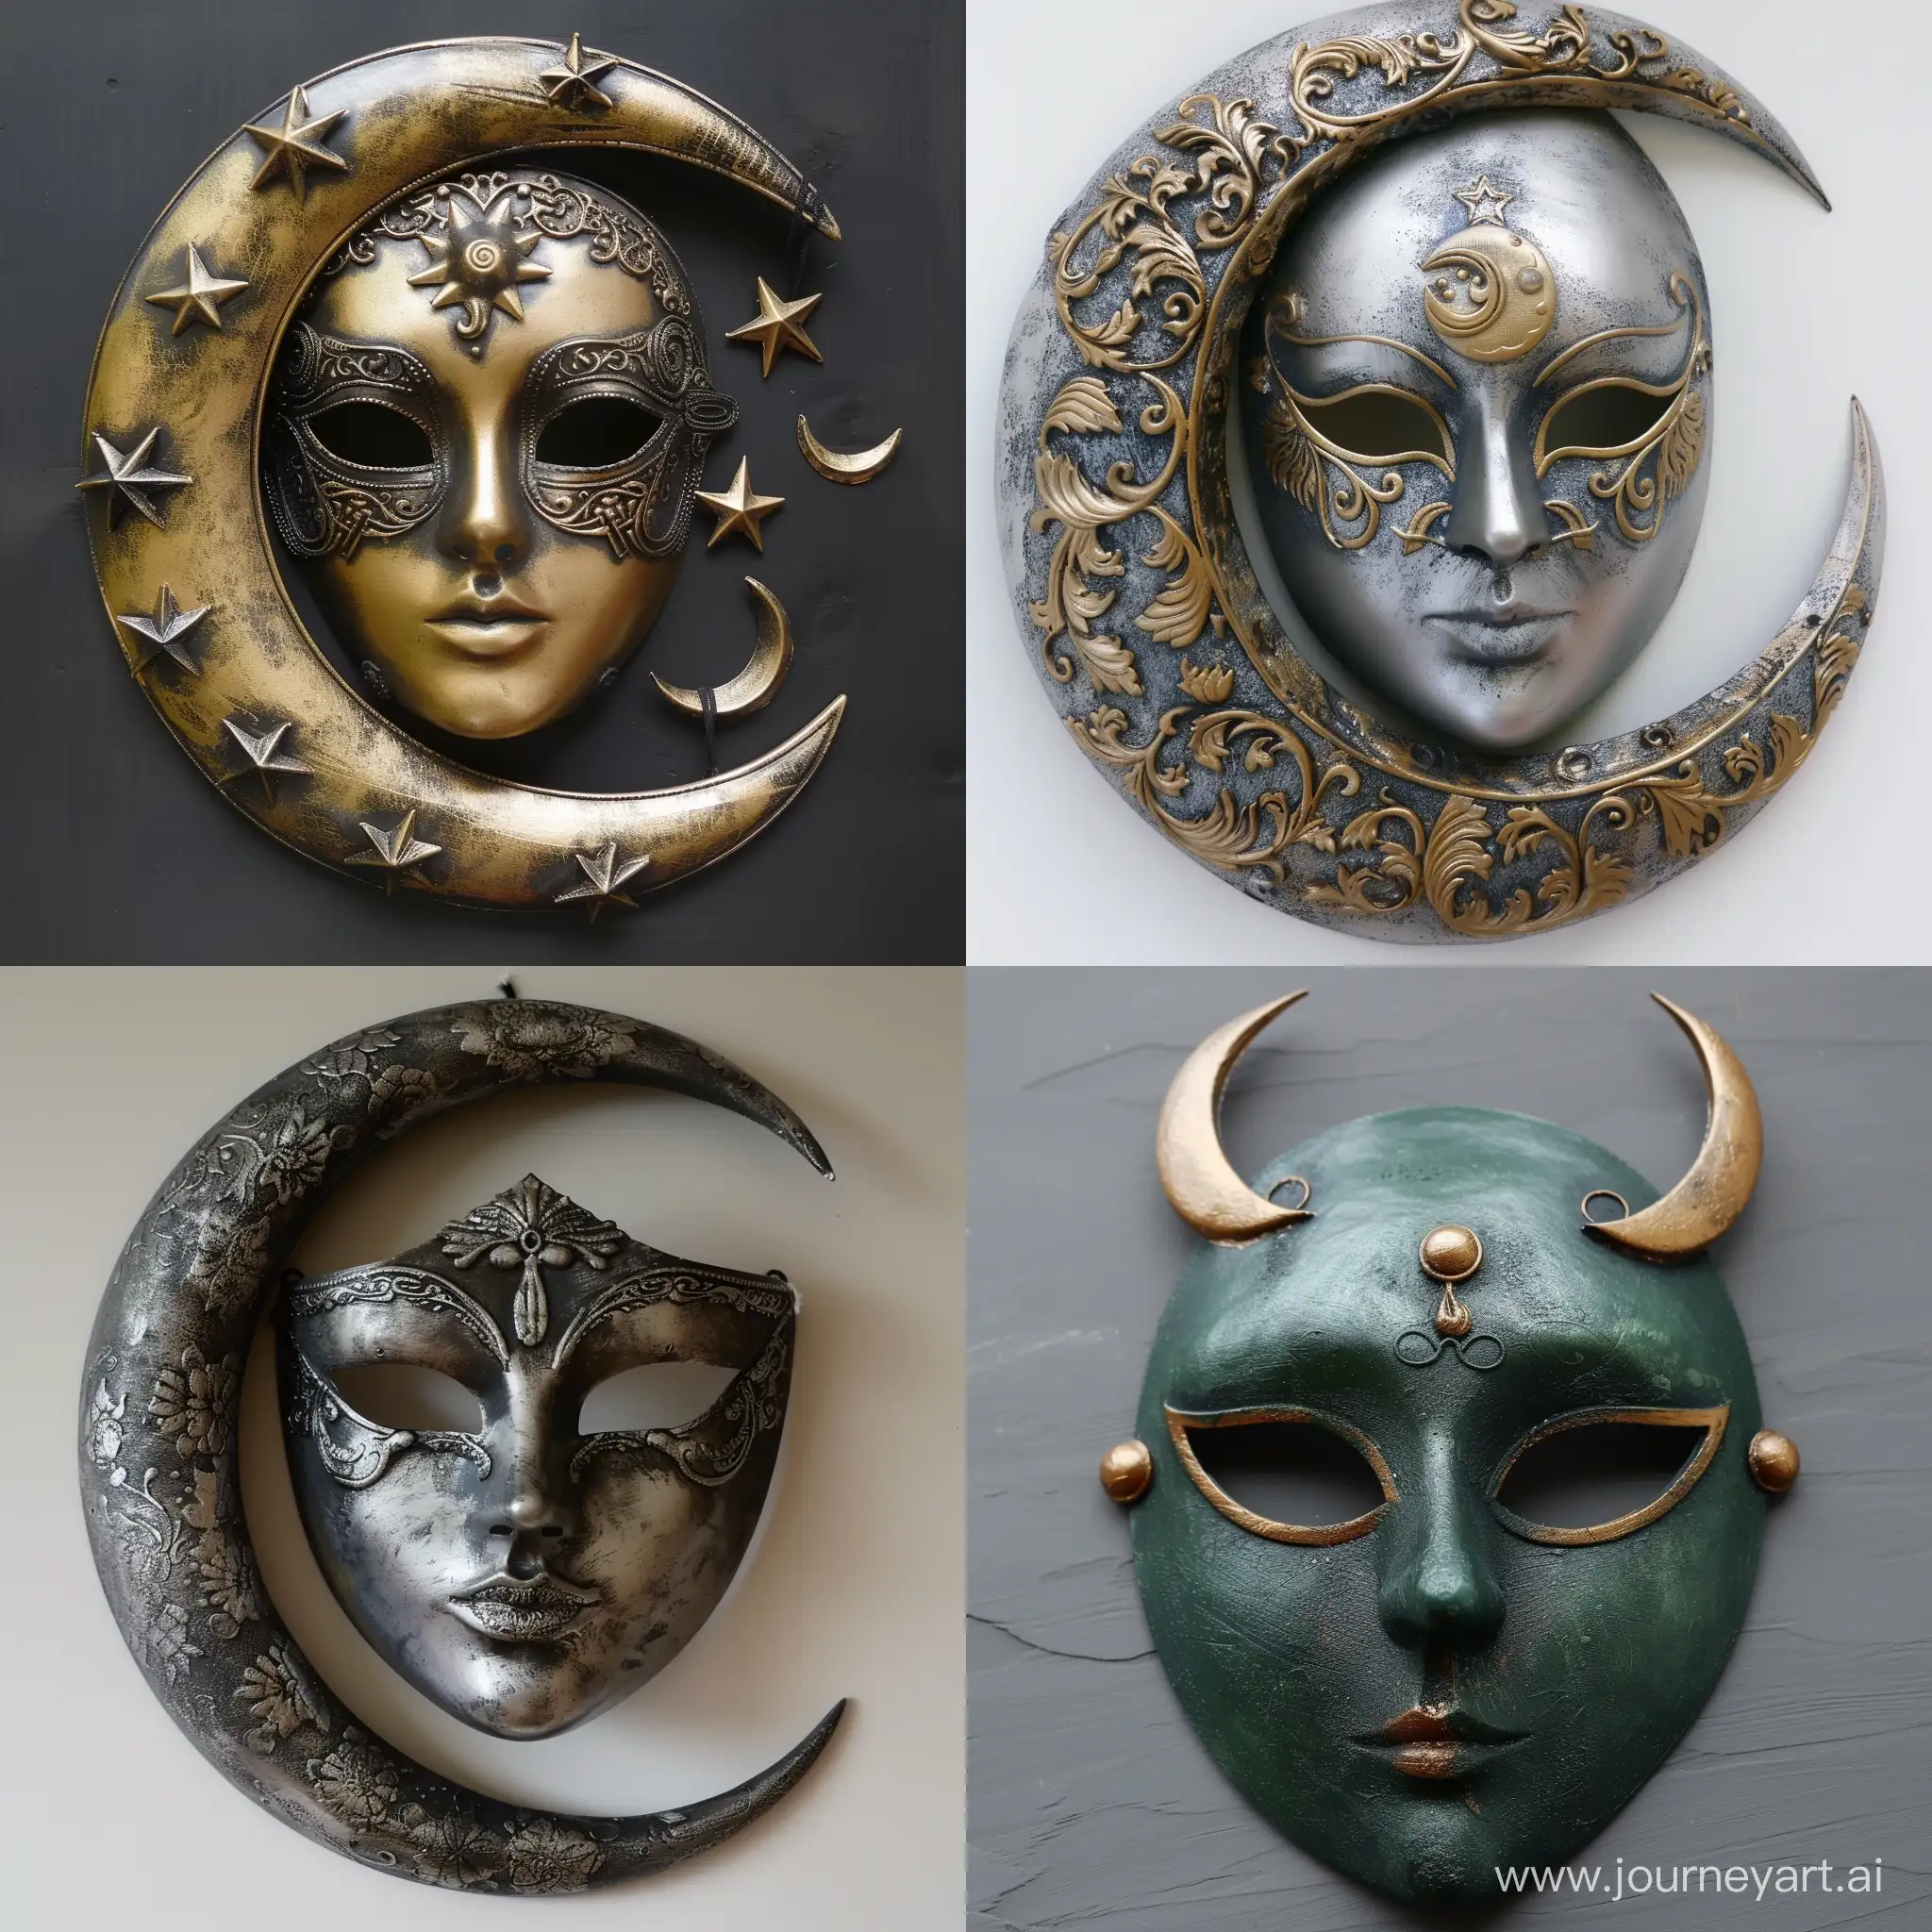 turkic moon goddes mythology mask